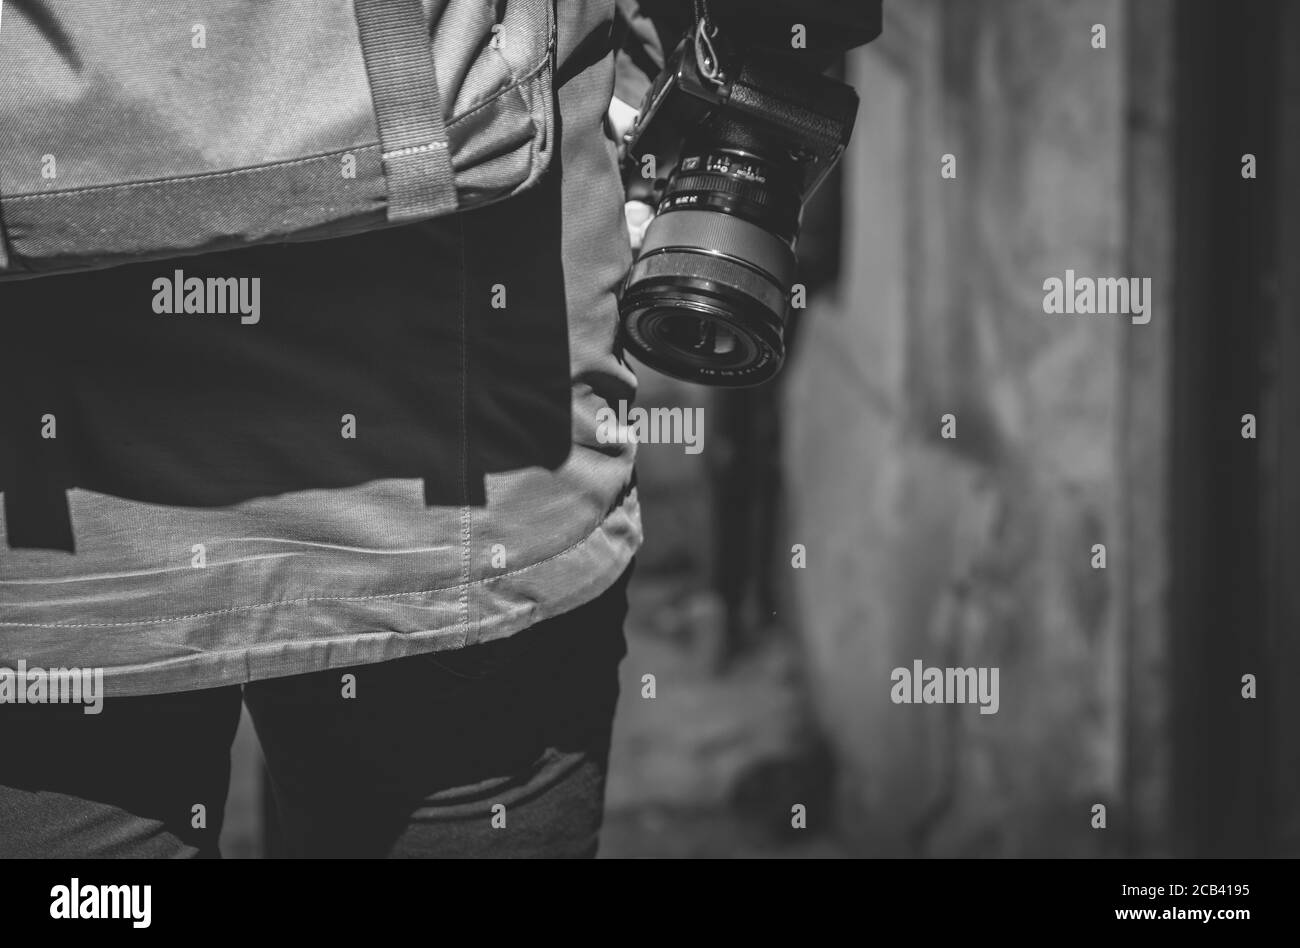 Primo piano in scala di grigi di un fotografo con una fotocamera, vista dal retro Foto Stock